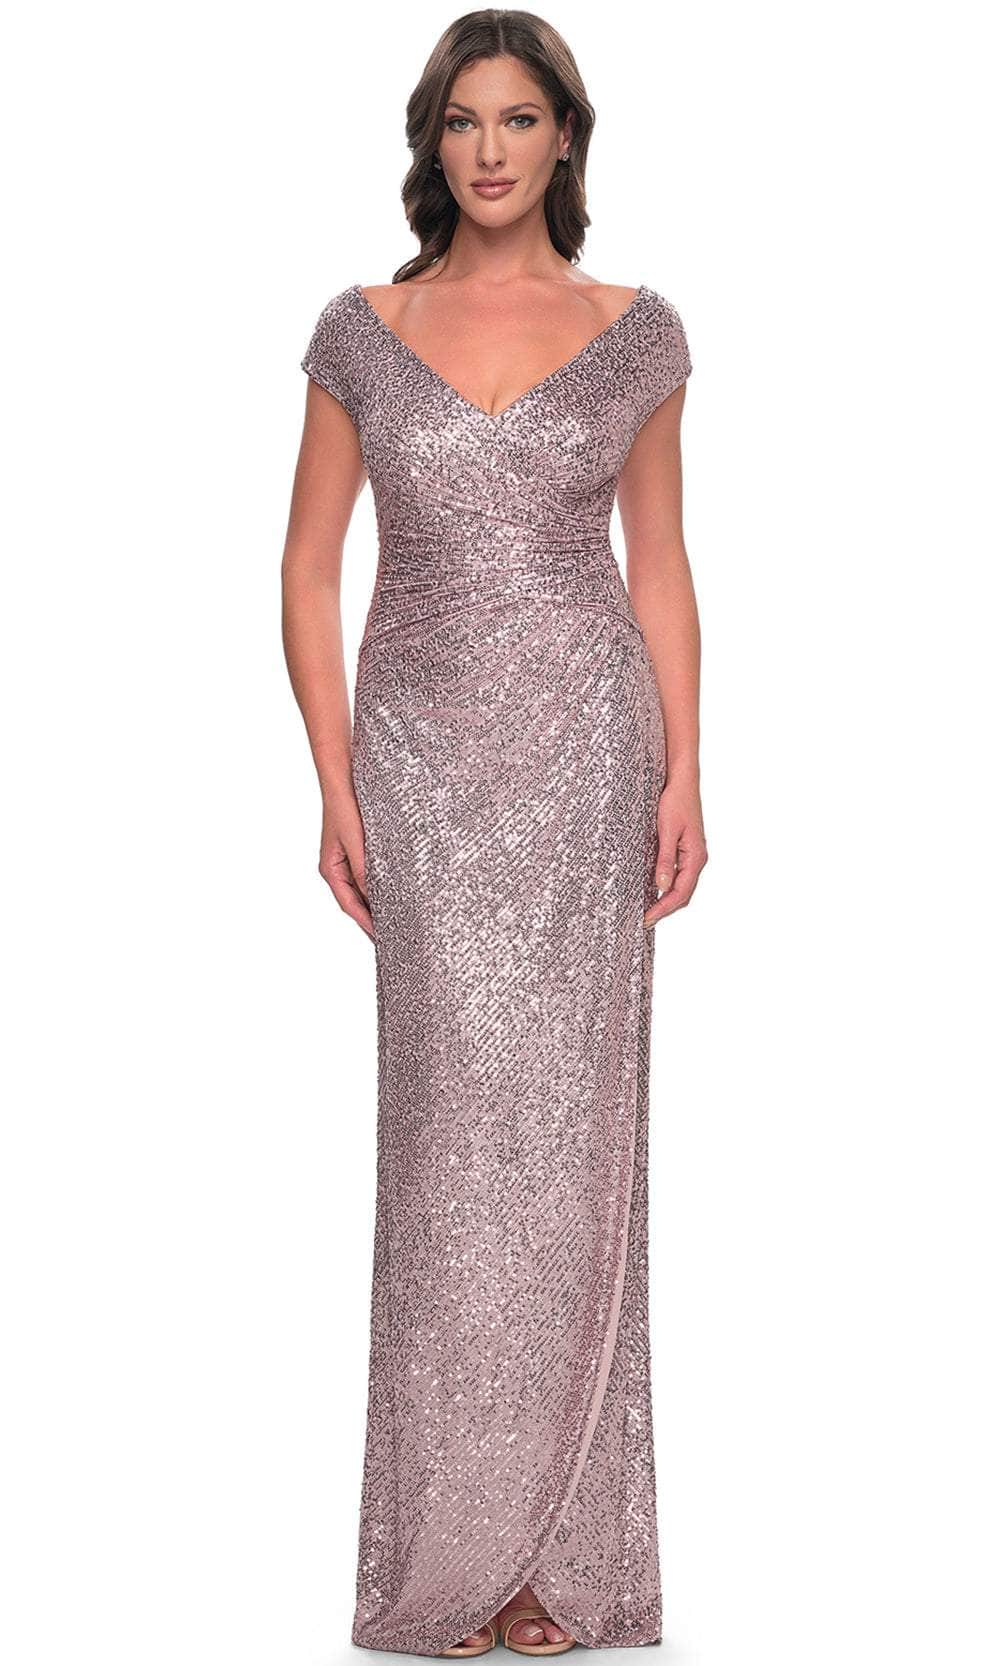 Image of La Femme 30865 - Ruched Sequin Evening Dress